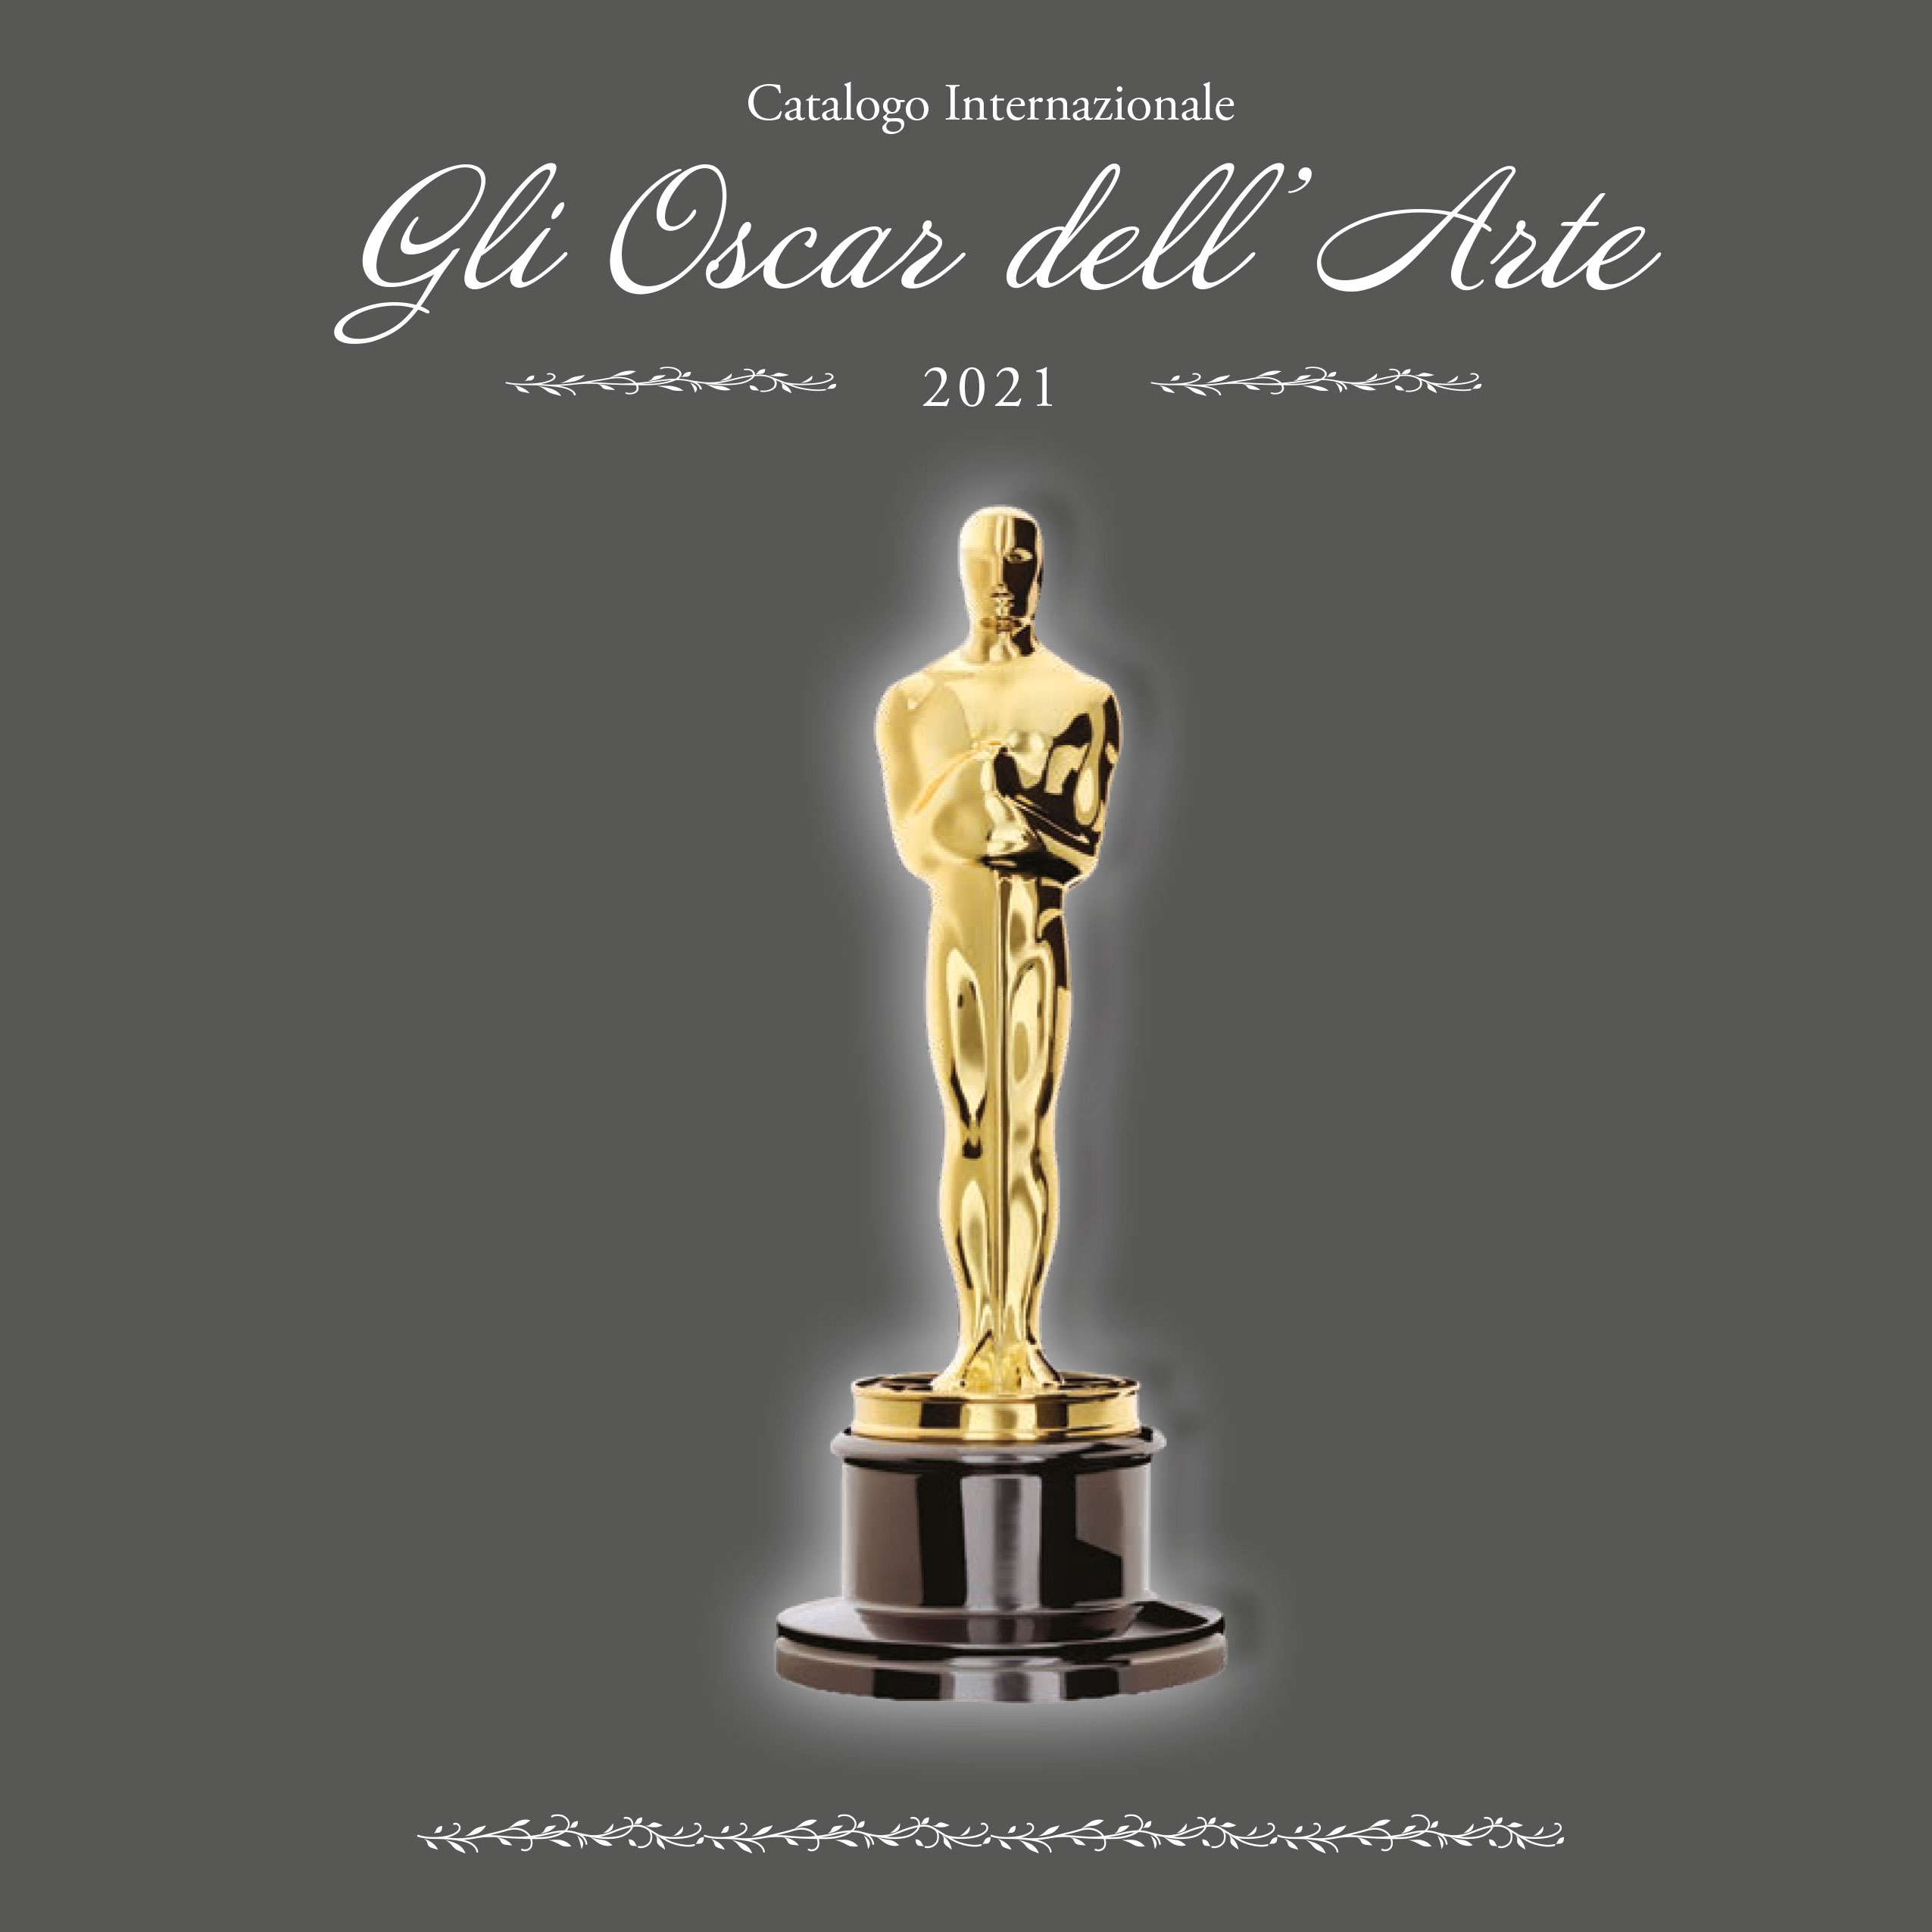 “Gli Oscar dell’Arte” 2021